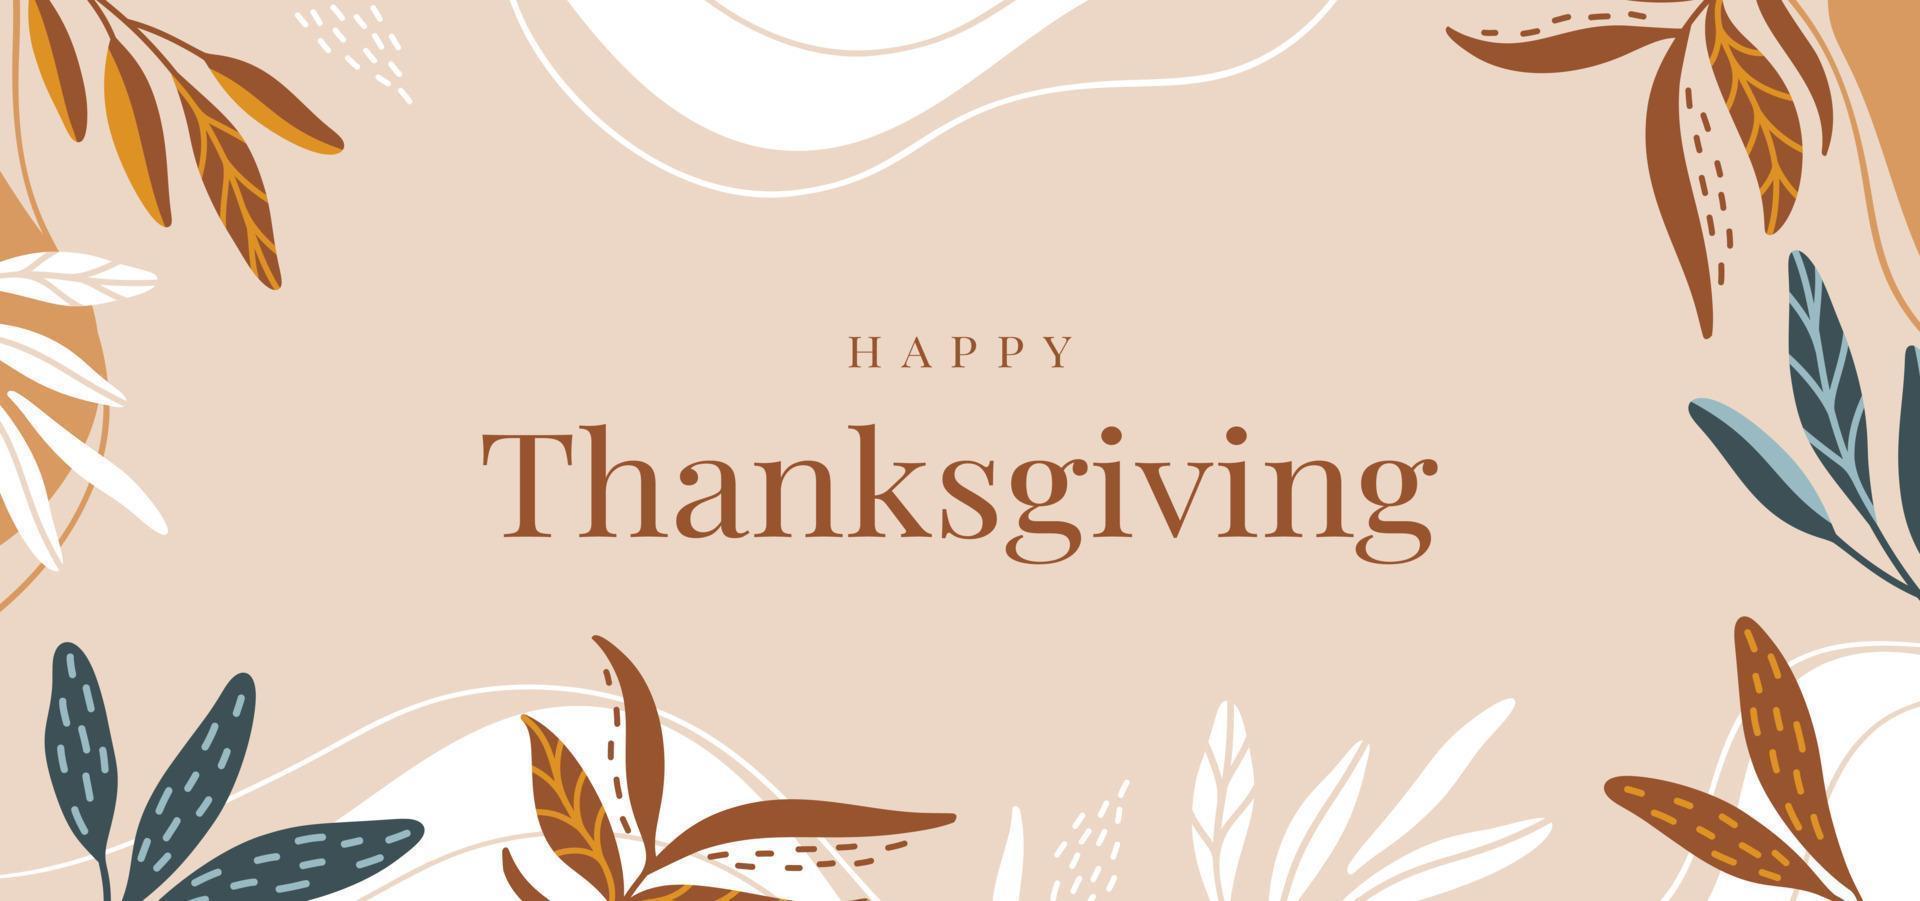 fond avec des feuilles d'automne colorées et texte joyeux thanksgiving vecteur